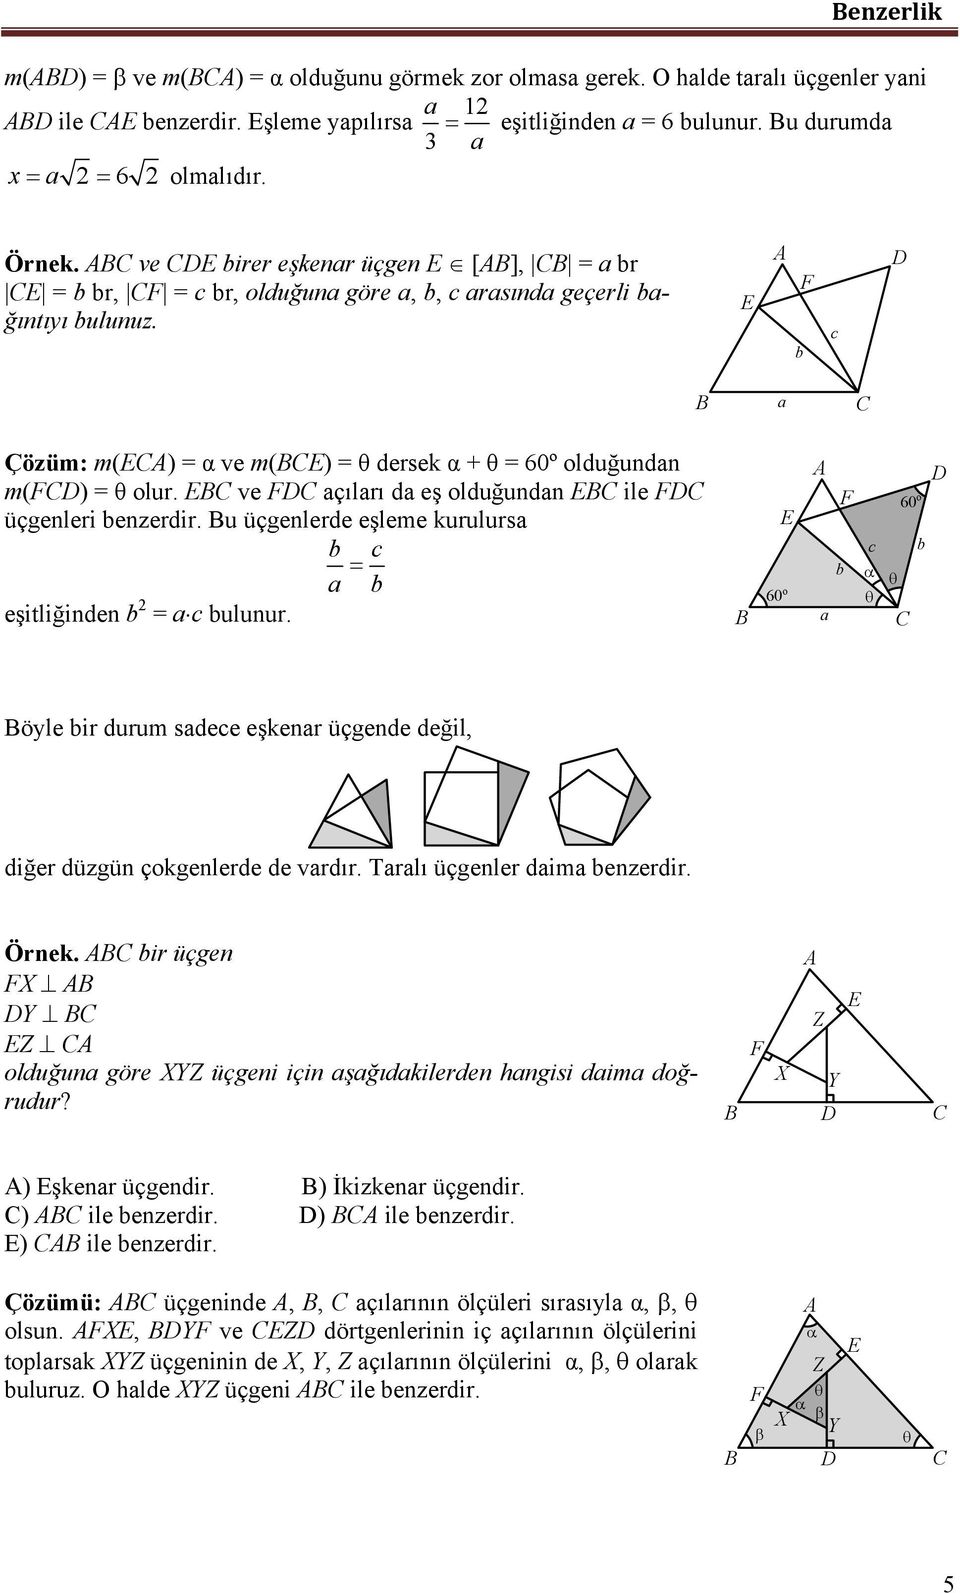 u üçgenlerde eşleme kurulurs eşitliğinden = ulunur. 60 o 60 o öyle ir durum sdee eşkenr üçgende değil, diğer düzgün çokgenlerde de vrdır. Trlı üçgenler dim enzerdir. Örnek.